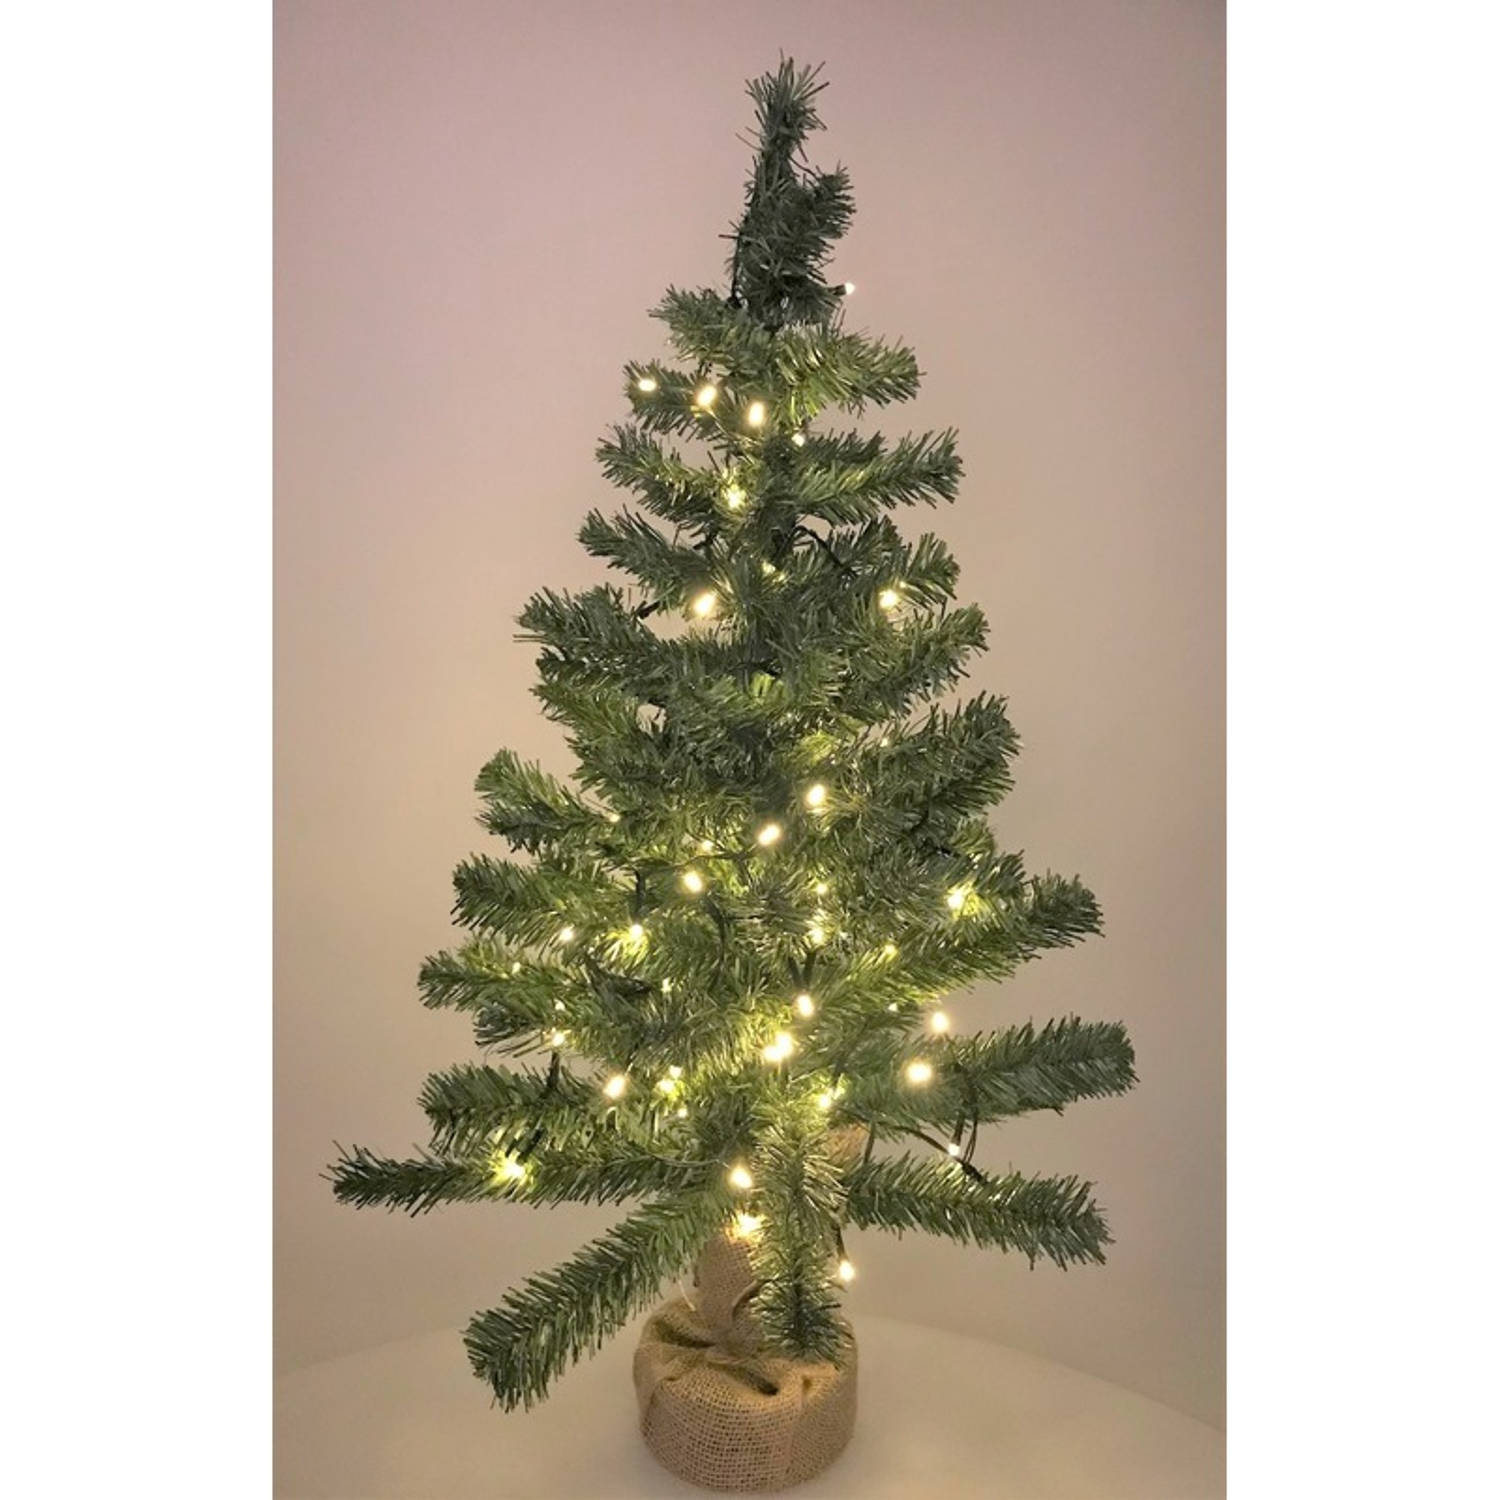 Kleine nep kerstboom in jute zak inclusief verlichting 75 cm Kleine kunstbomen-boompjes